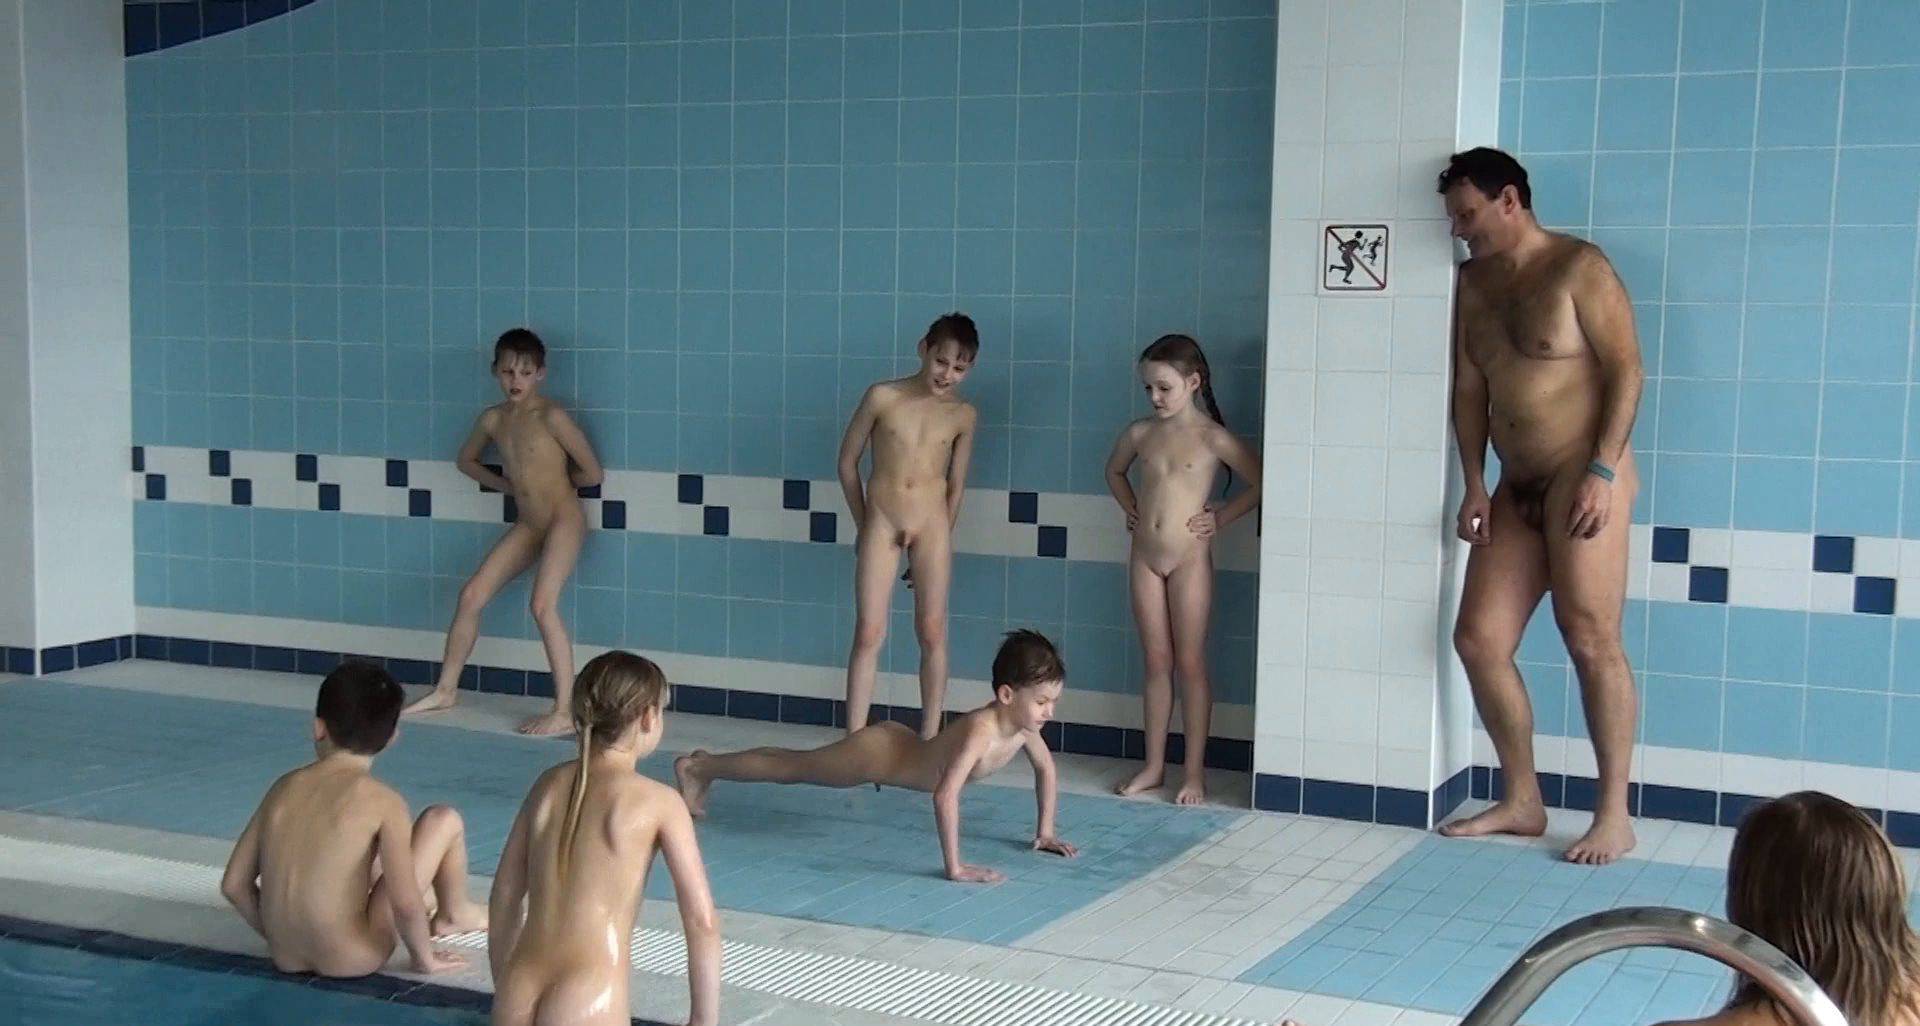 Nudist Videos Activity Pool - 1